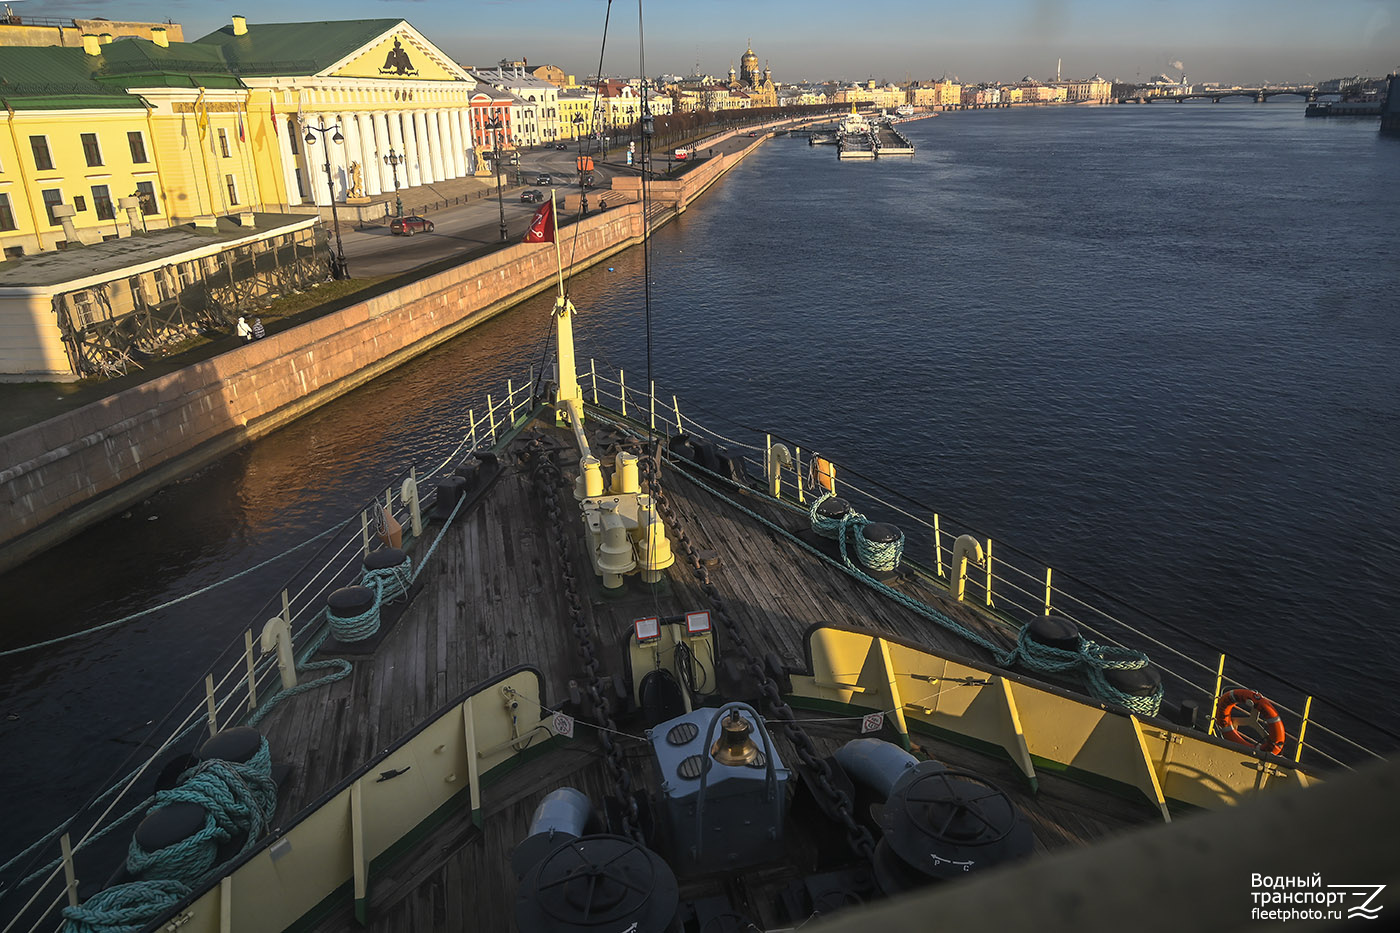 Красин. View from wheelhouses and bridge wings, Deck views